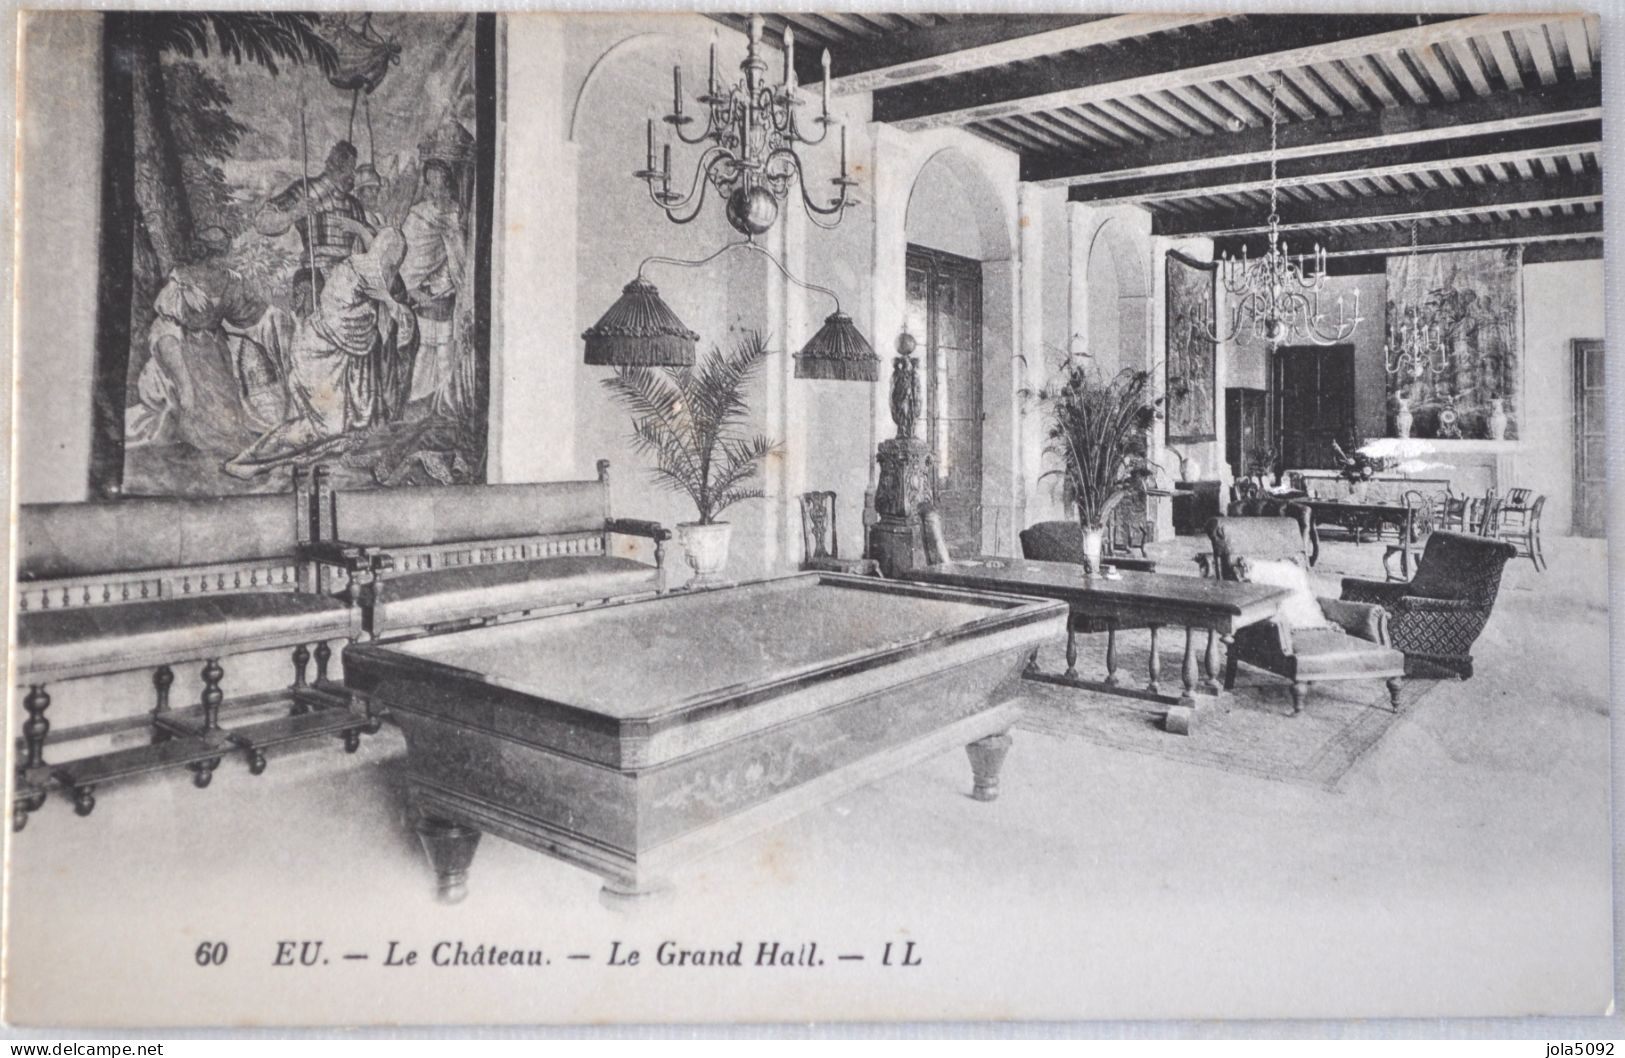 76 - EU - Le Château - Le Grand Hall - Eu